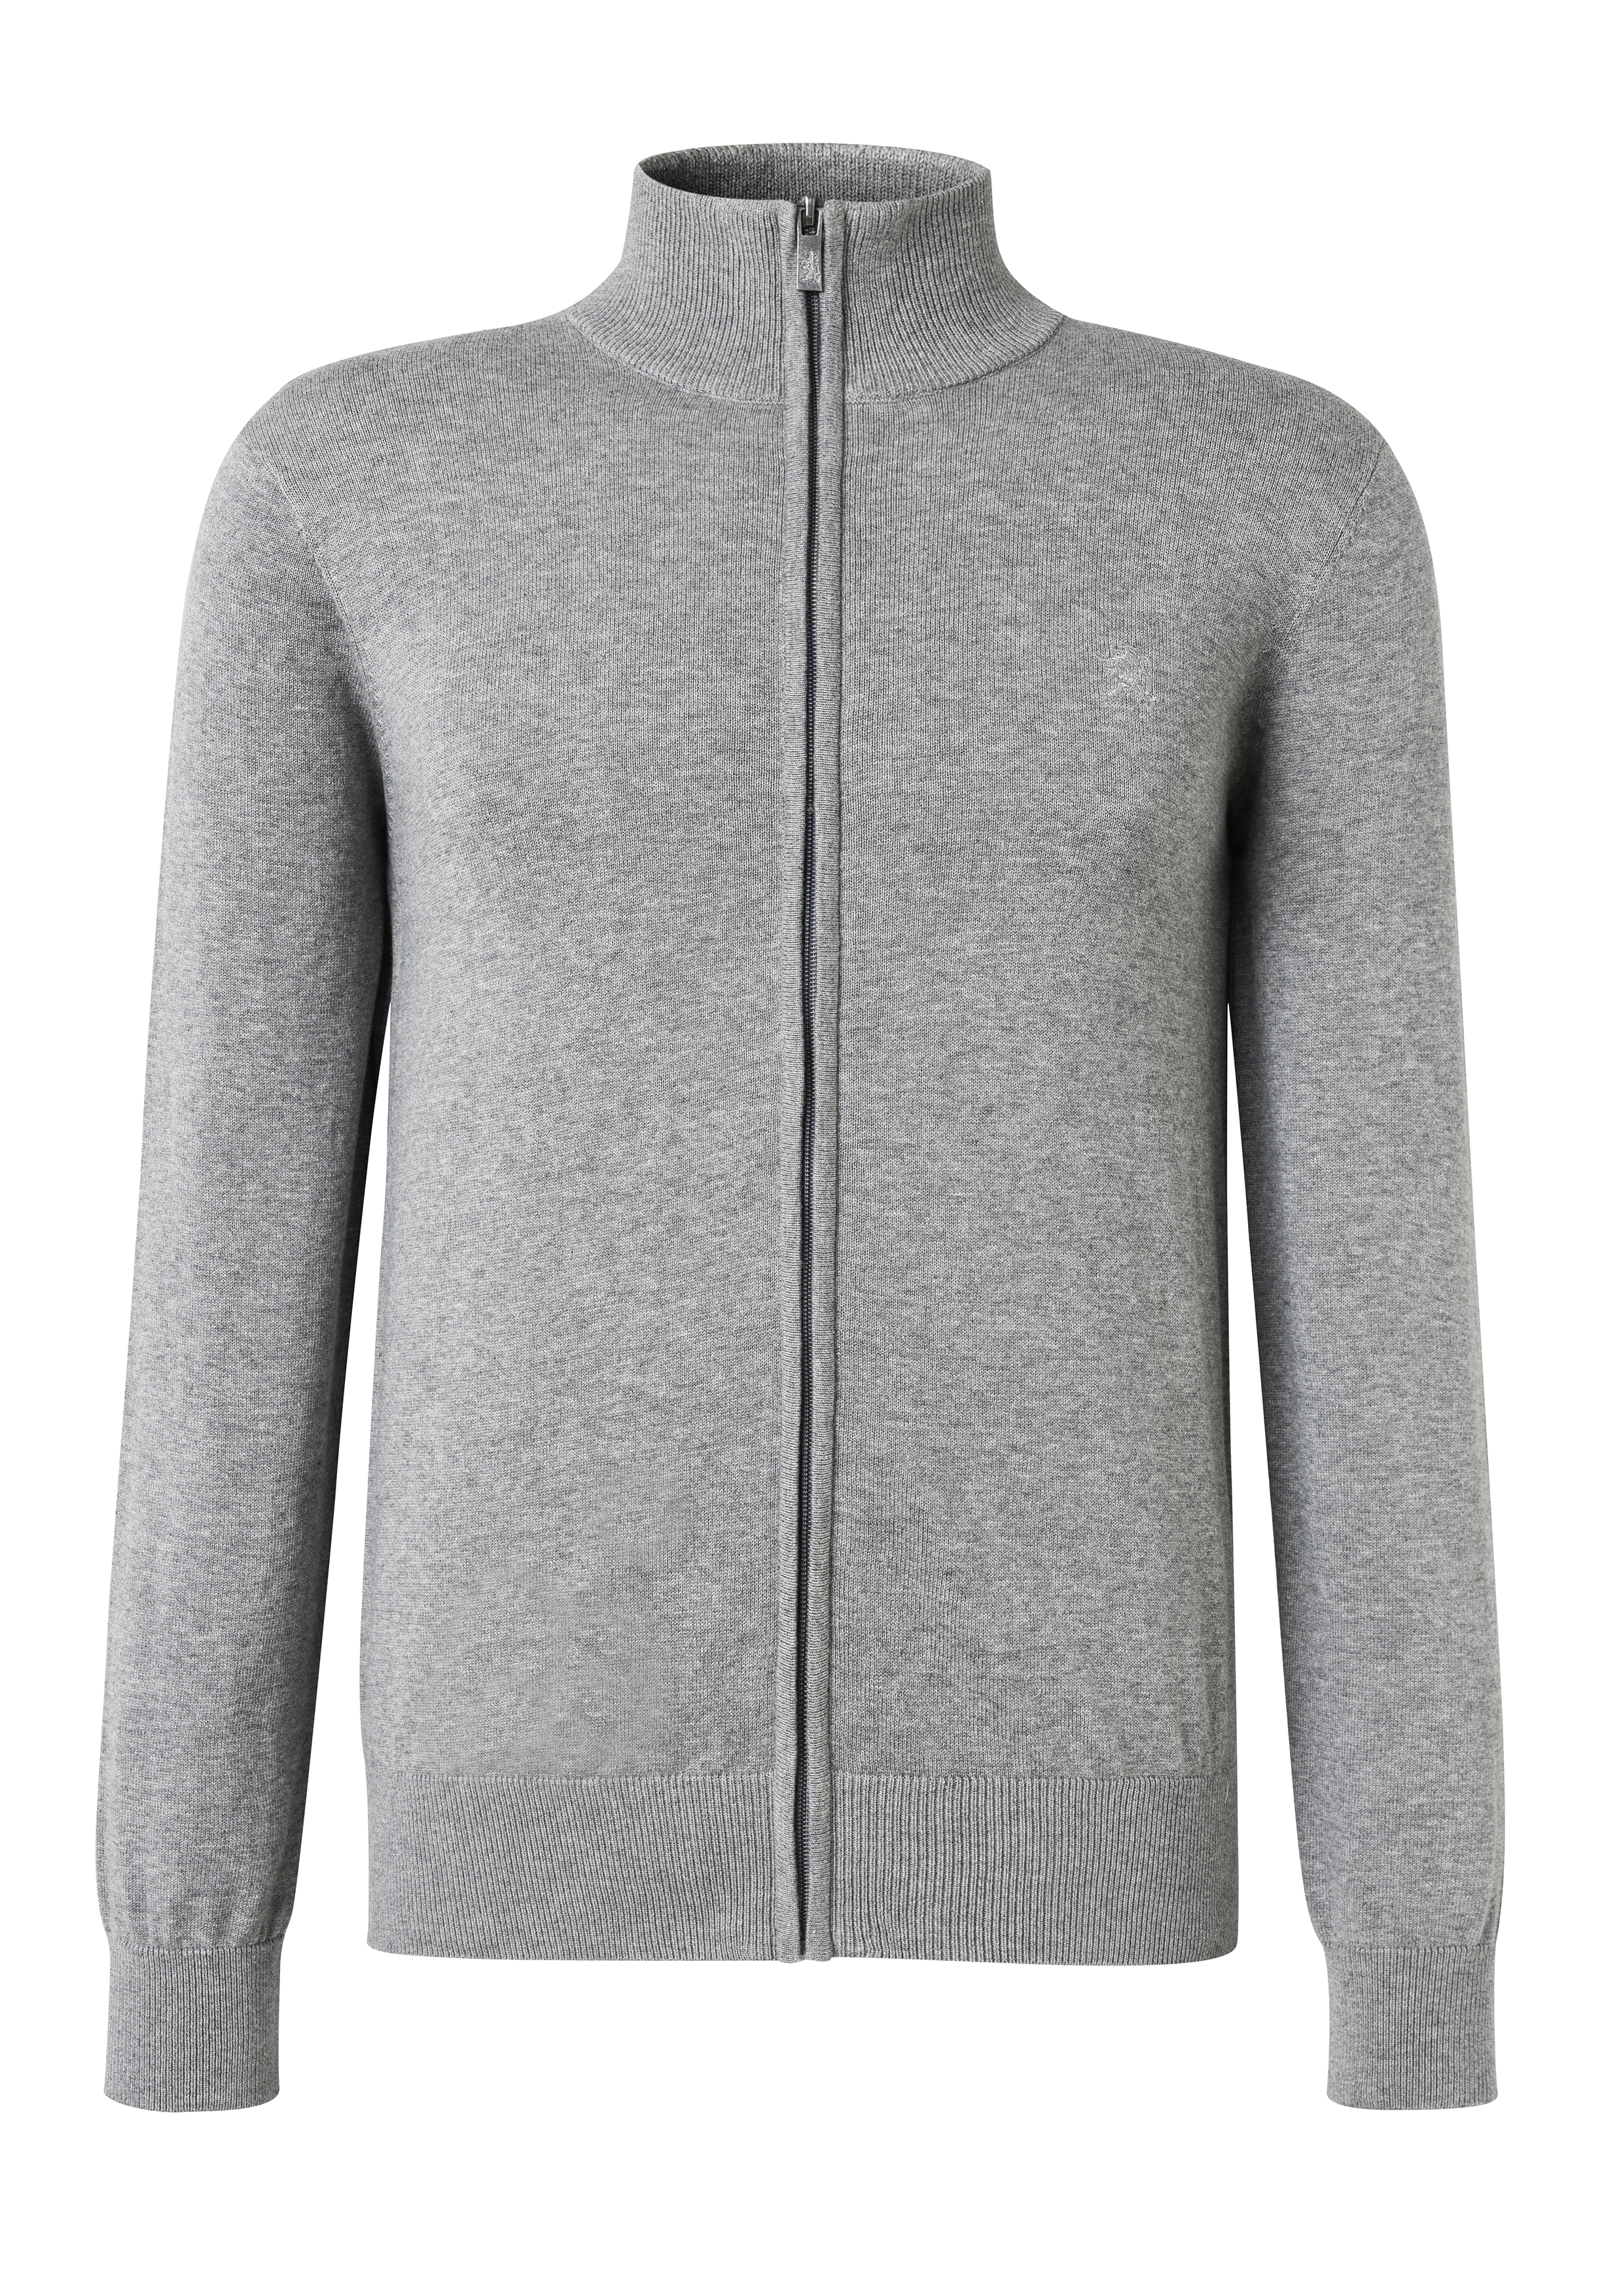 Men\'s Gray Full-front Zipper Long-sleeved Sweater